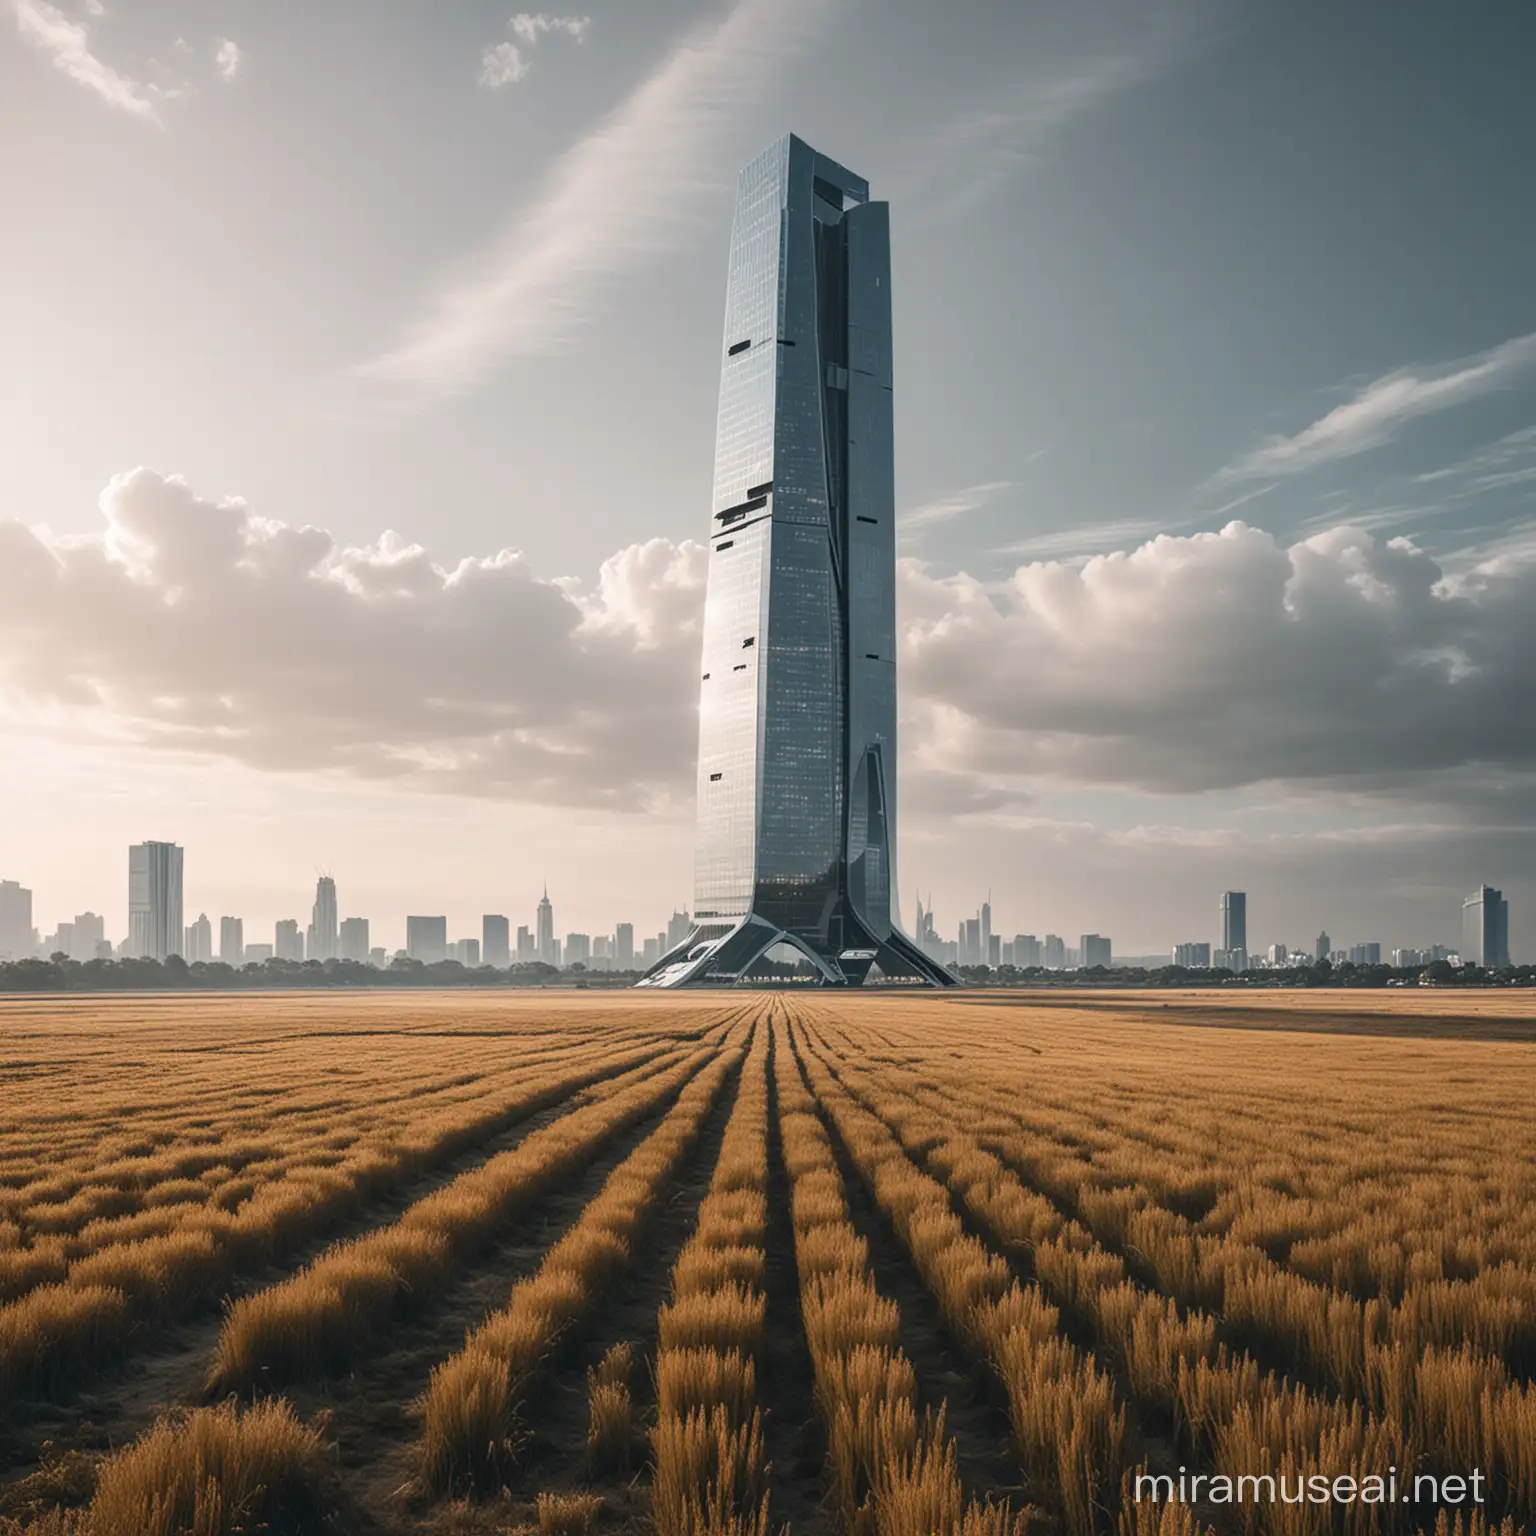 Futuristic Skyscraper Rising in Vast Empty Landscape